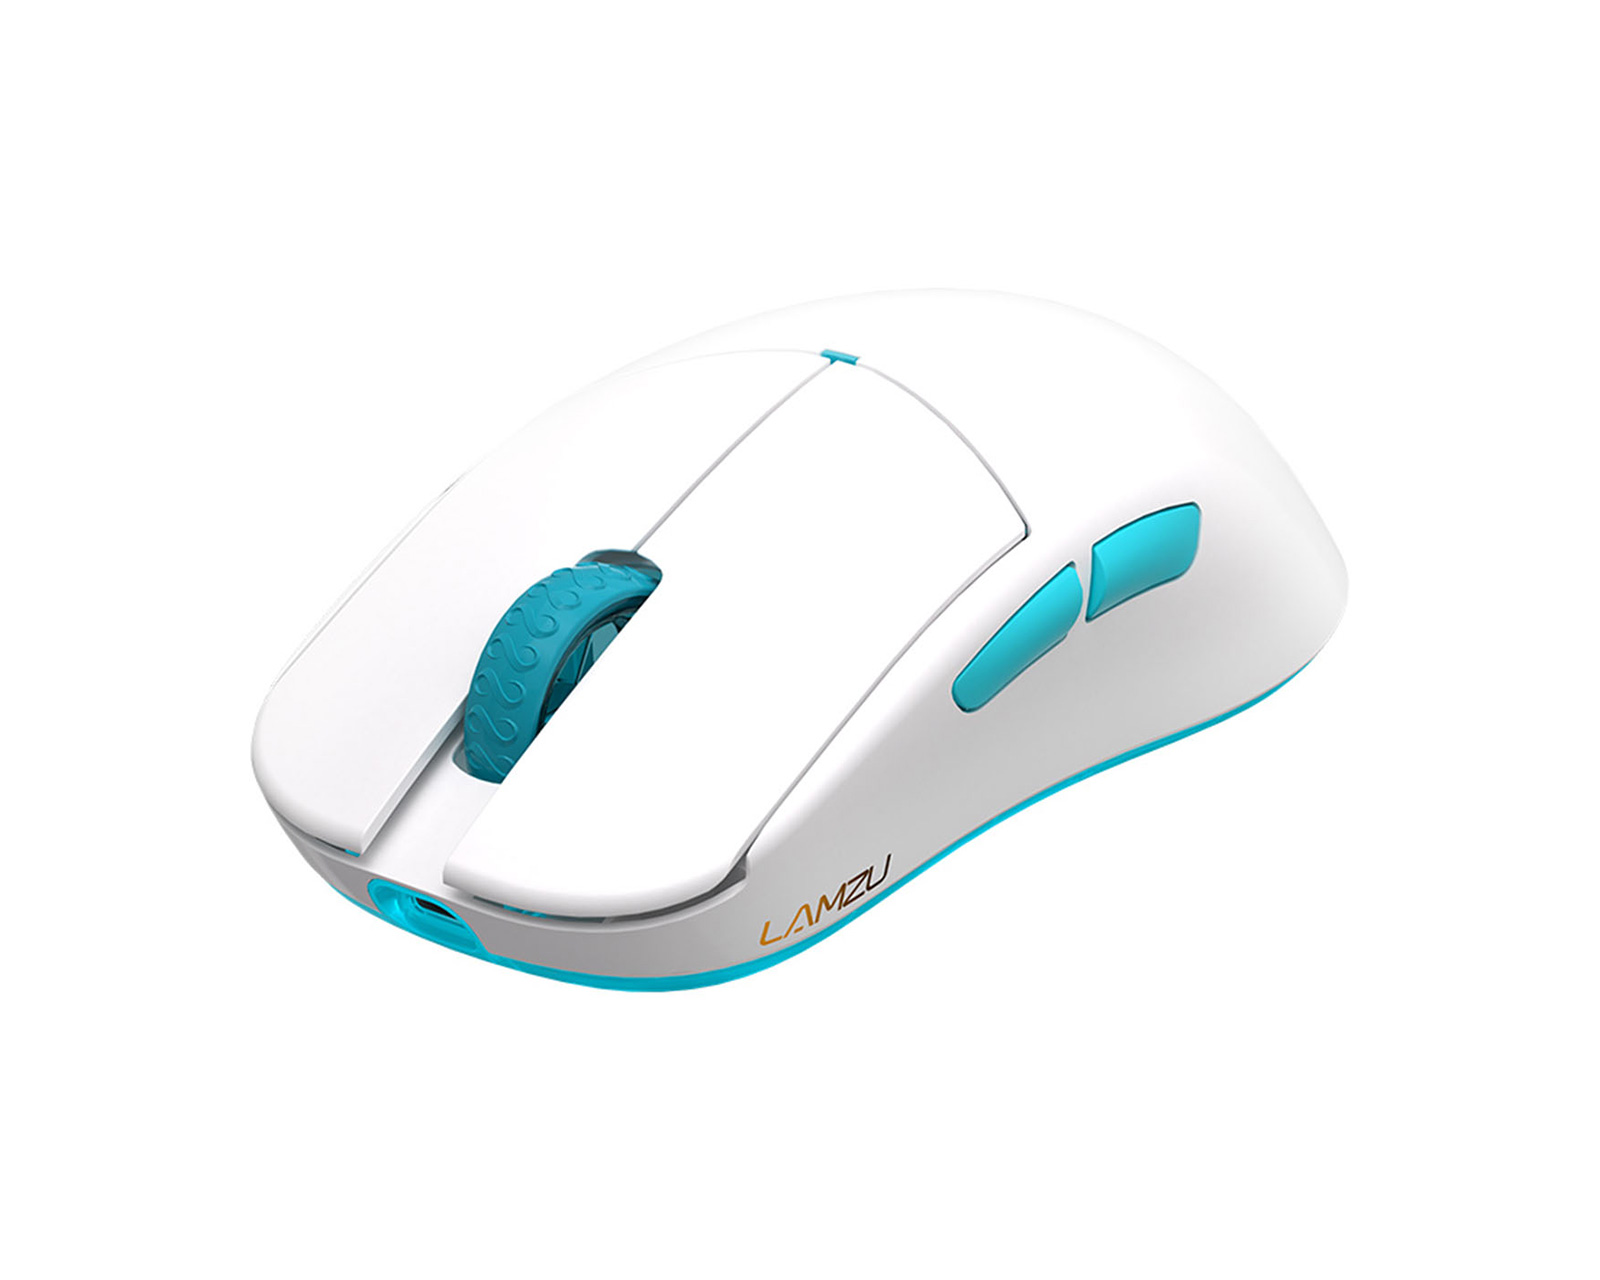 Lamzu Atlantis OG V2 Wireless Superlight Gaming Mouse - White